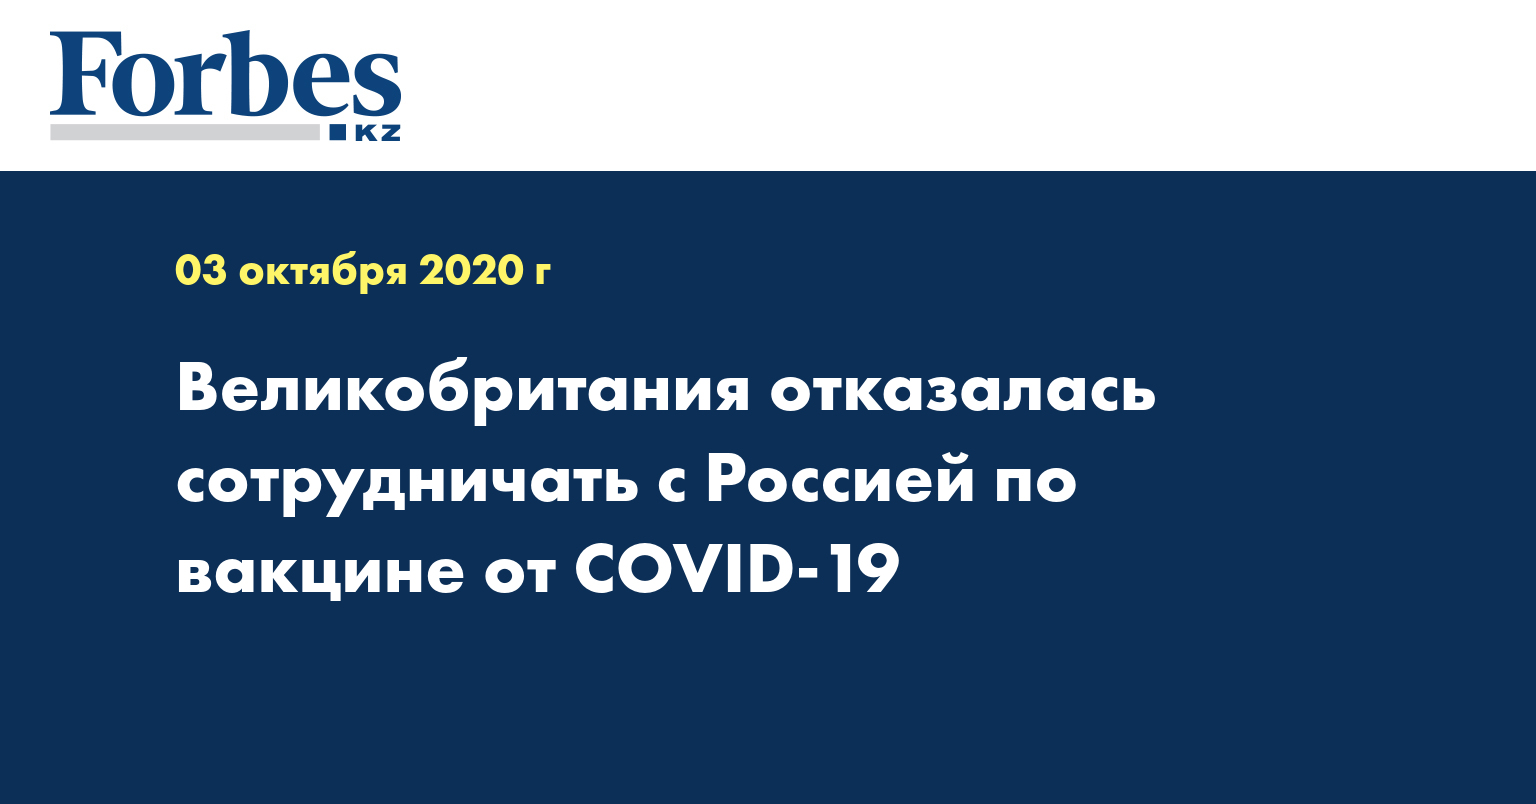 Великобритания отказалась сотрудничать с Россией по вакцине от COVID-19